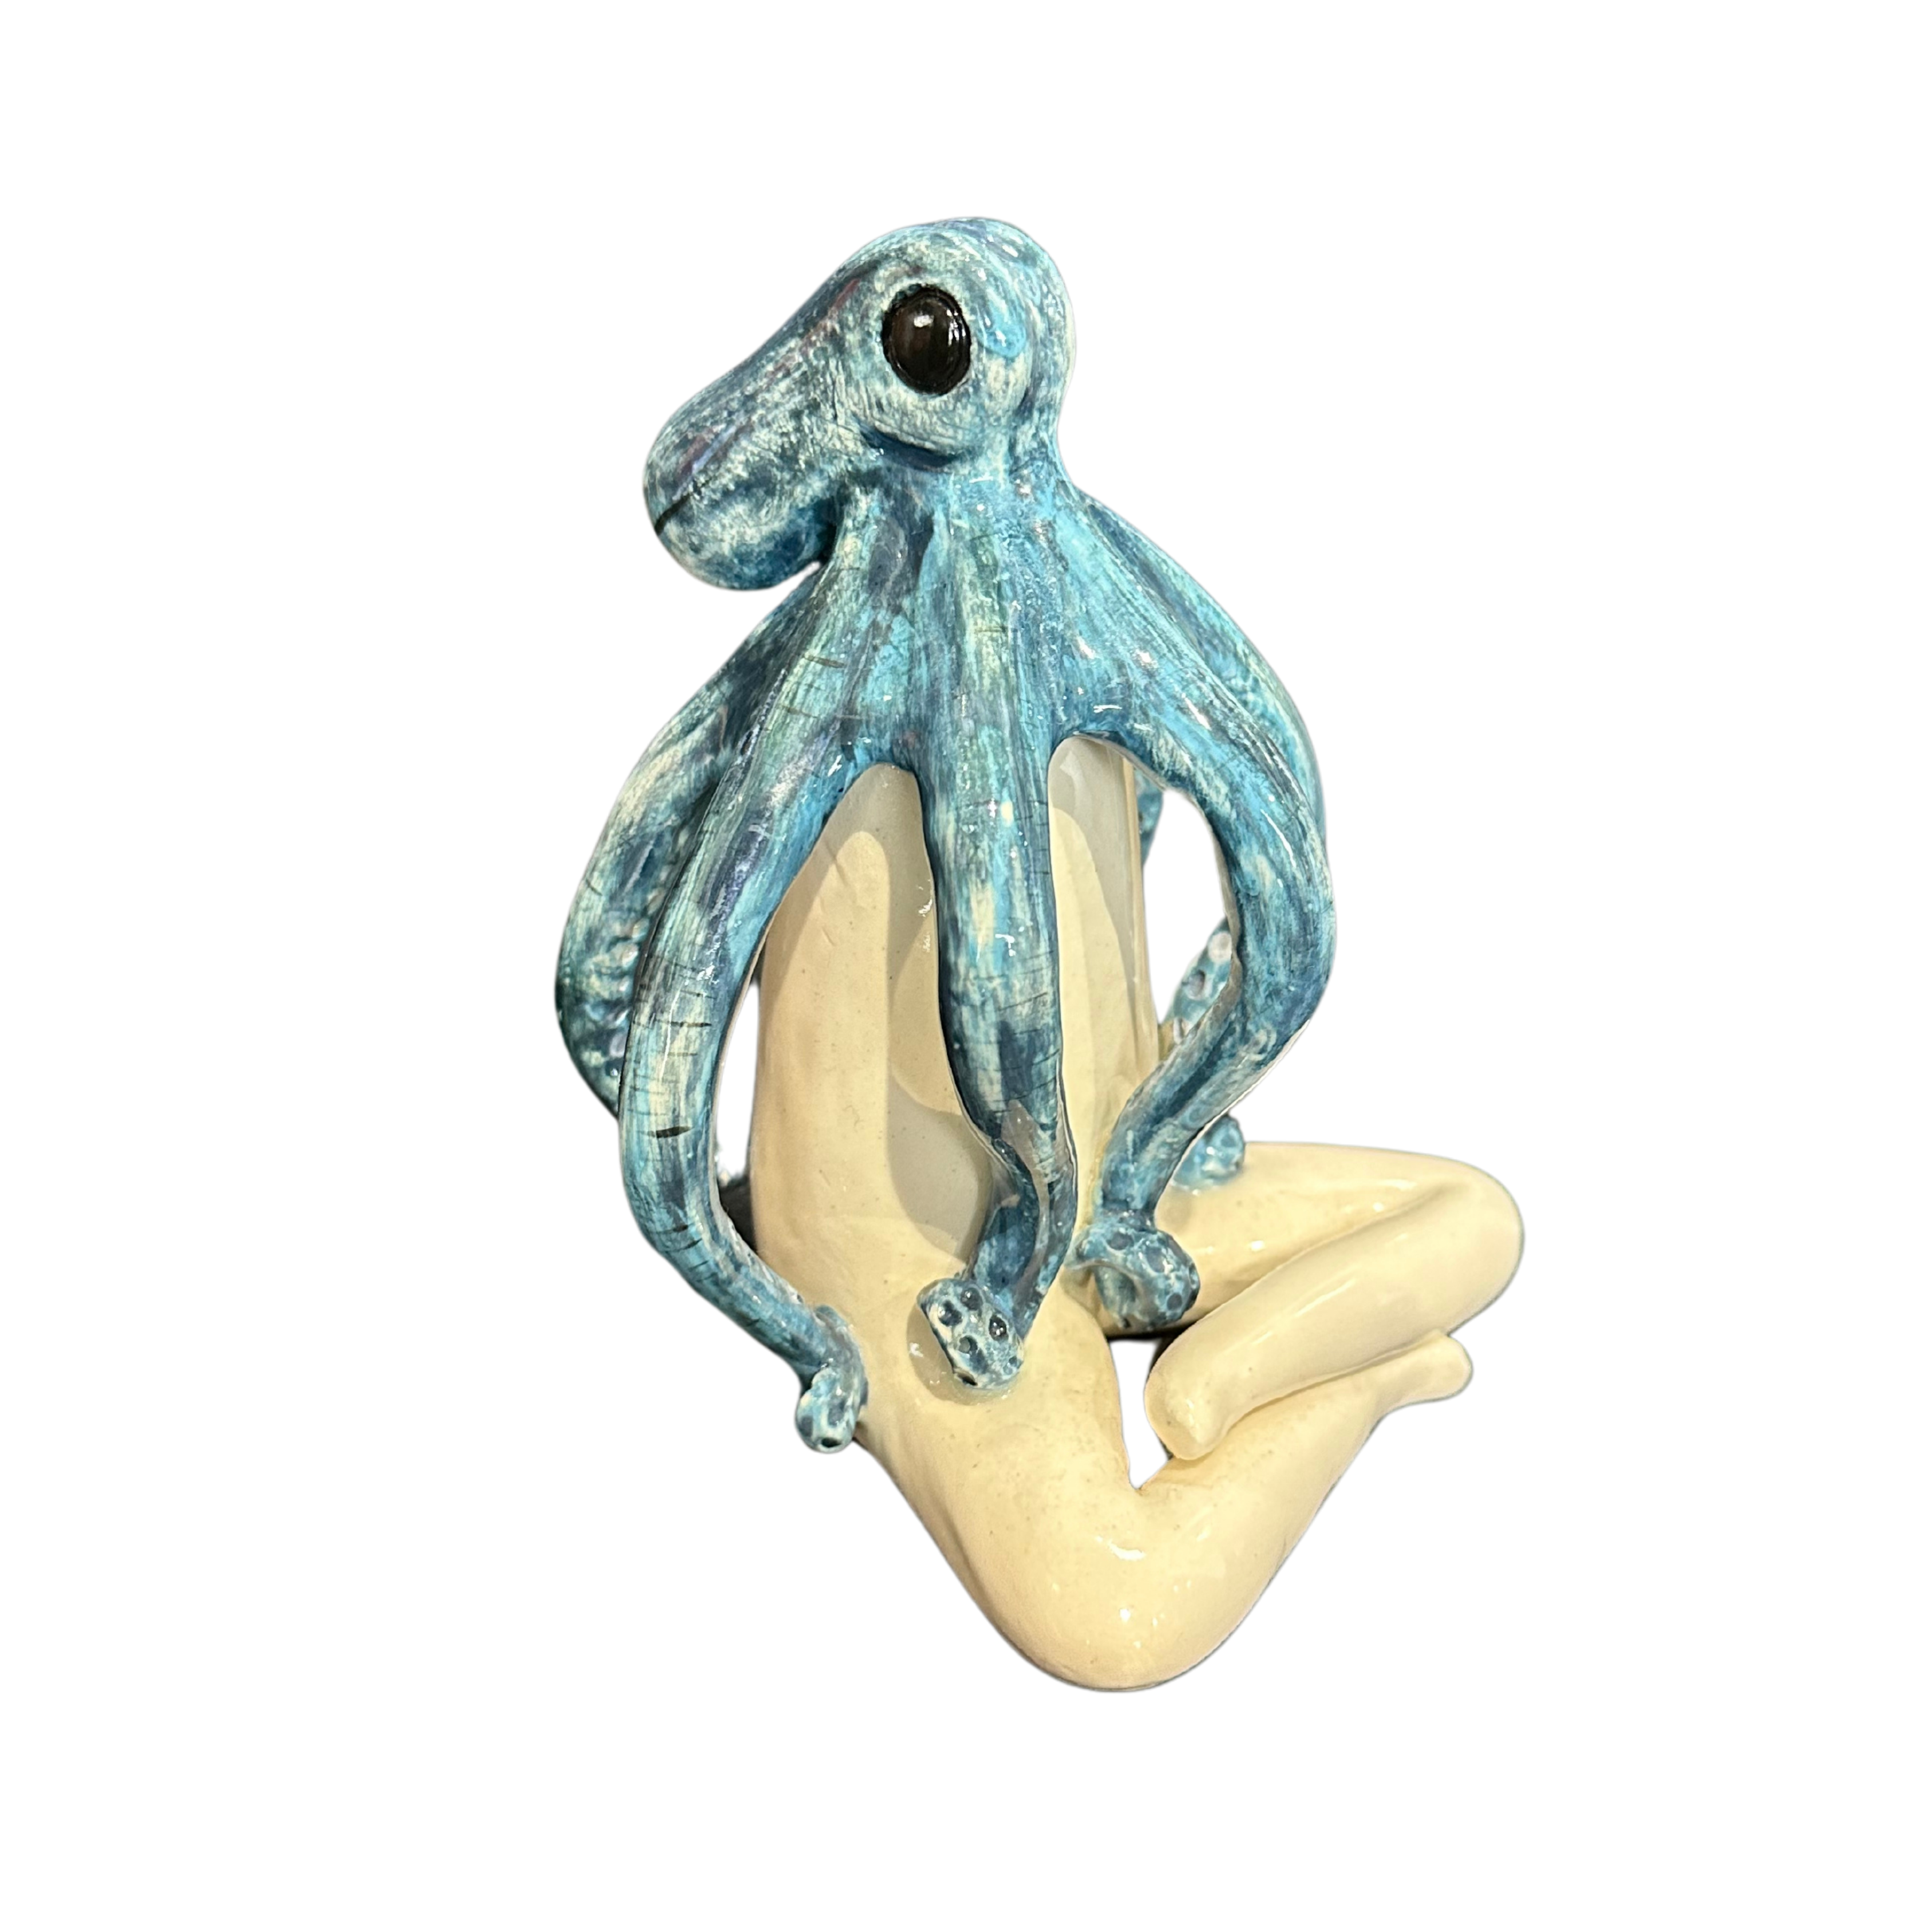 Medium Ceramic Blue Octopus Statue - Fantasea Range